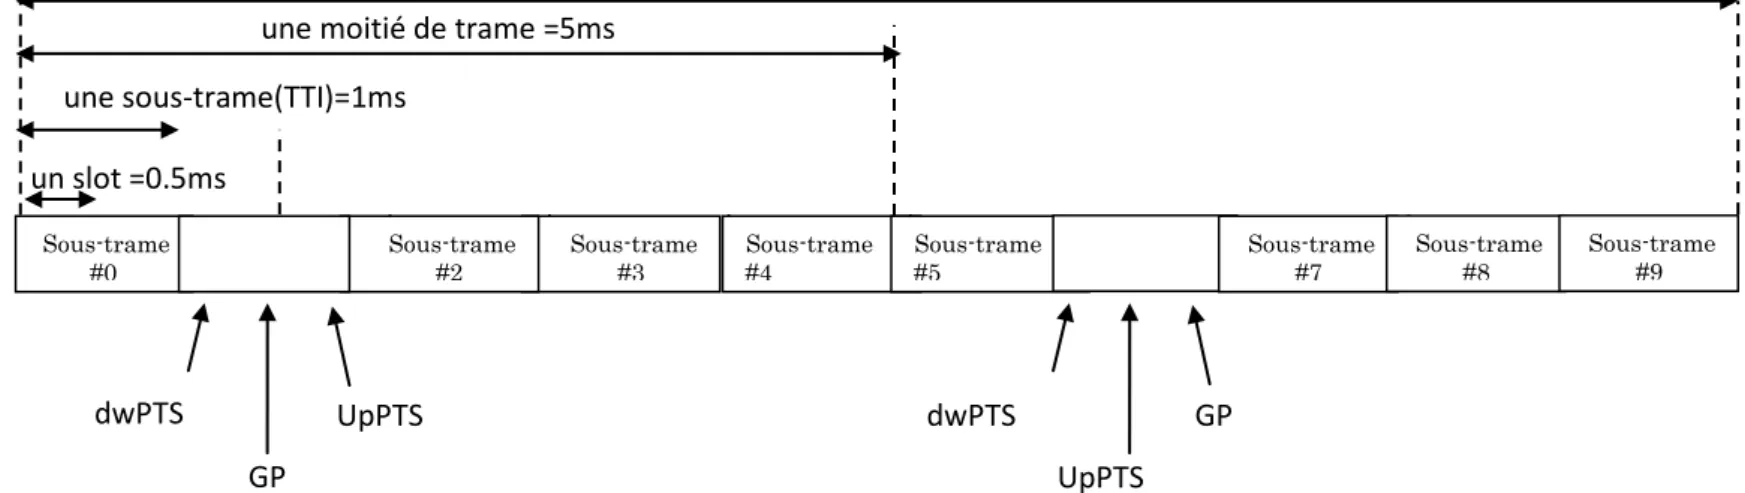 Figure I.10.Le mode de transmission TDD 